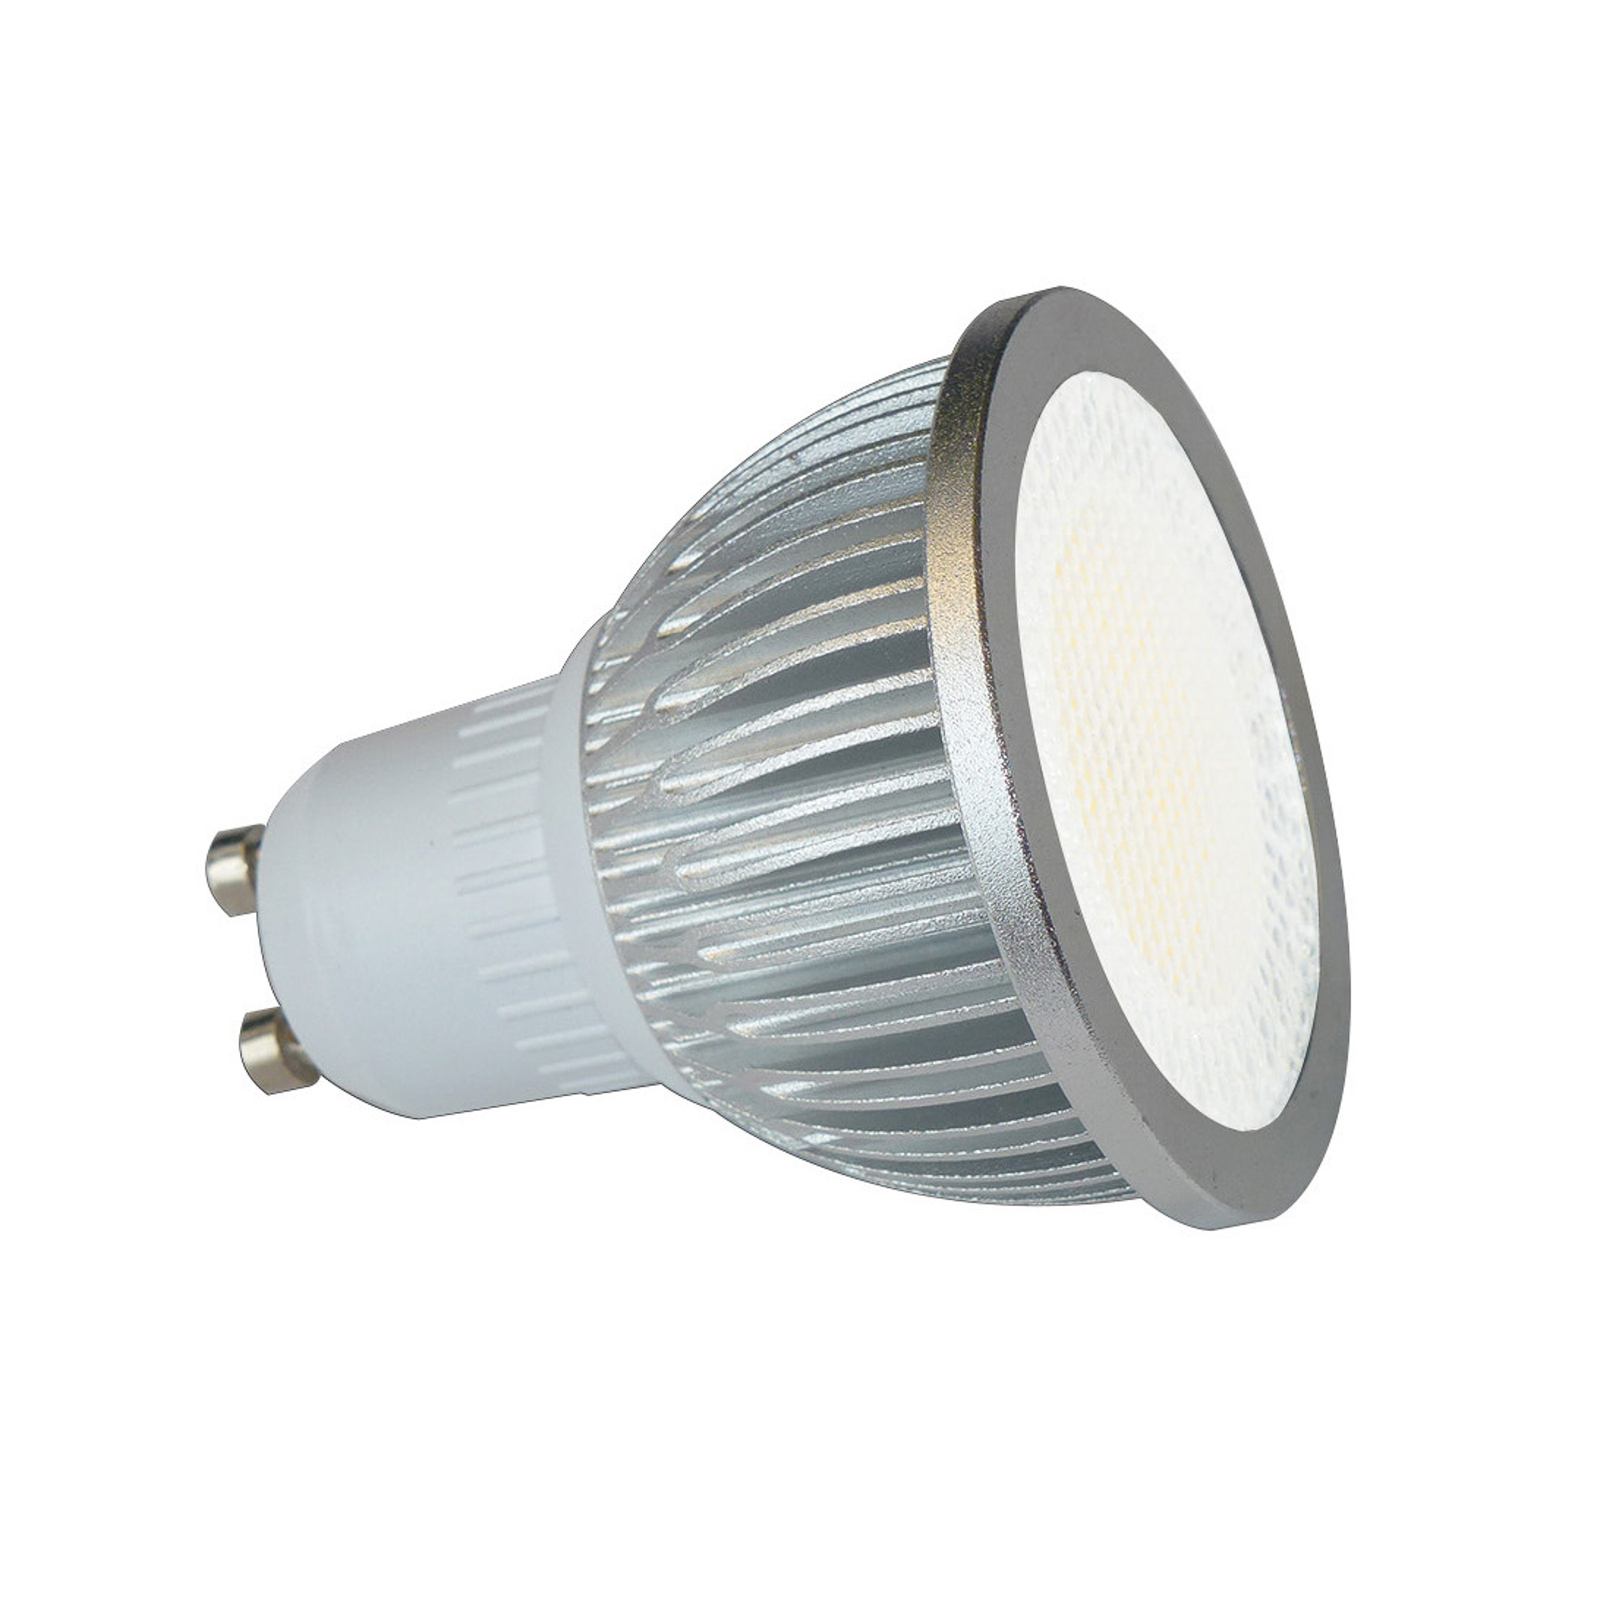 Hoogspanning LED reflector GU10 5W 830 85° 4/set